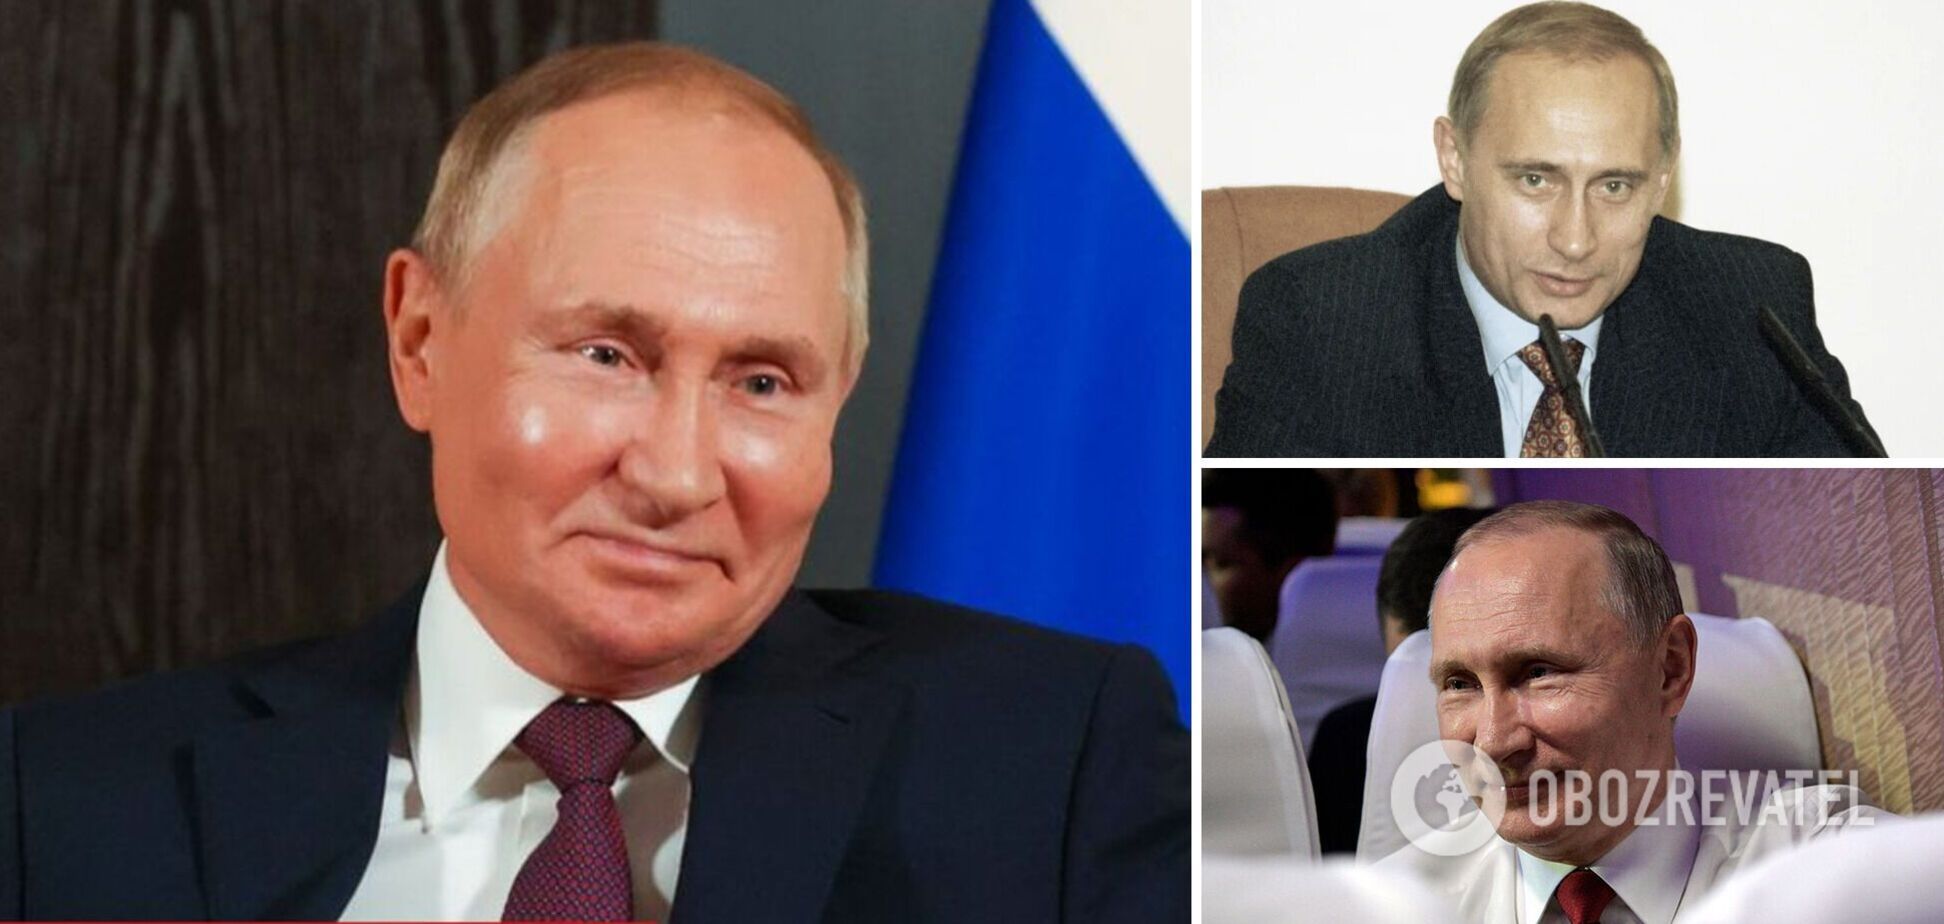 Доступ к Путину в Кремле очень ограничен, а его двойники находятся в закрытых местах под охраной – ГУР